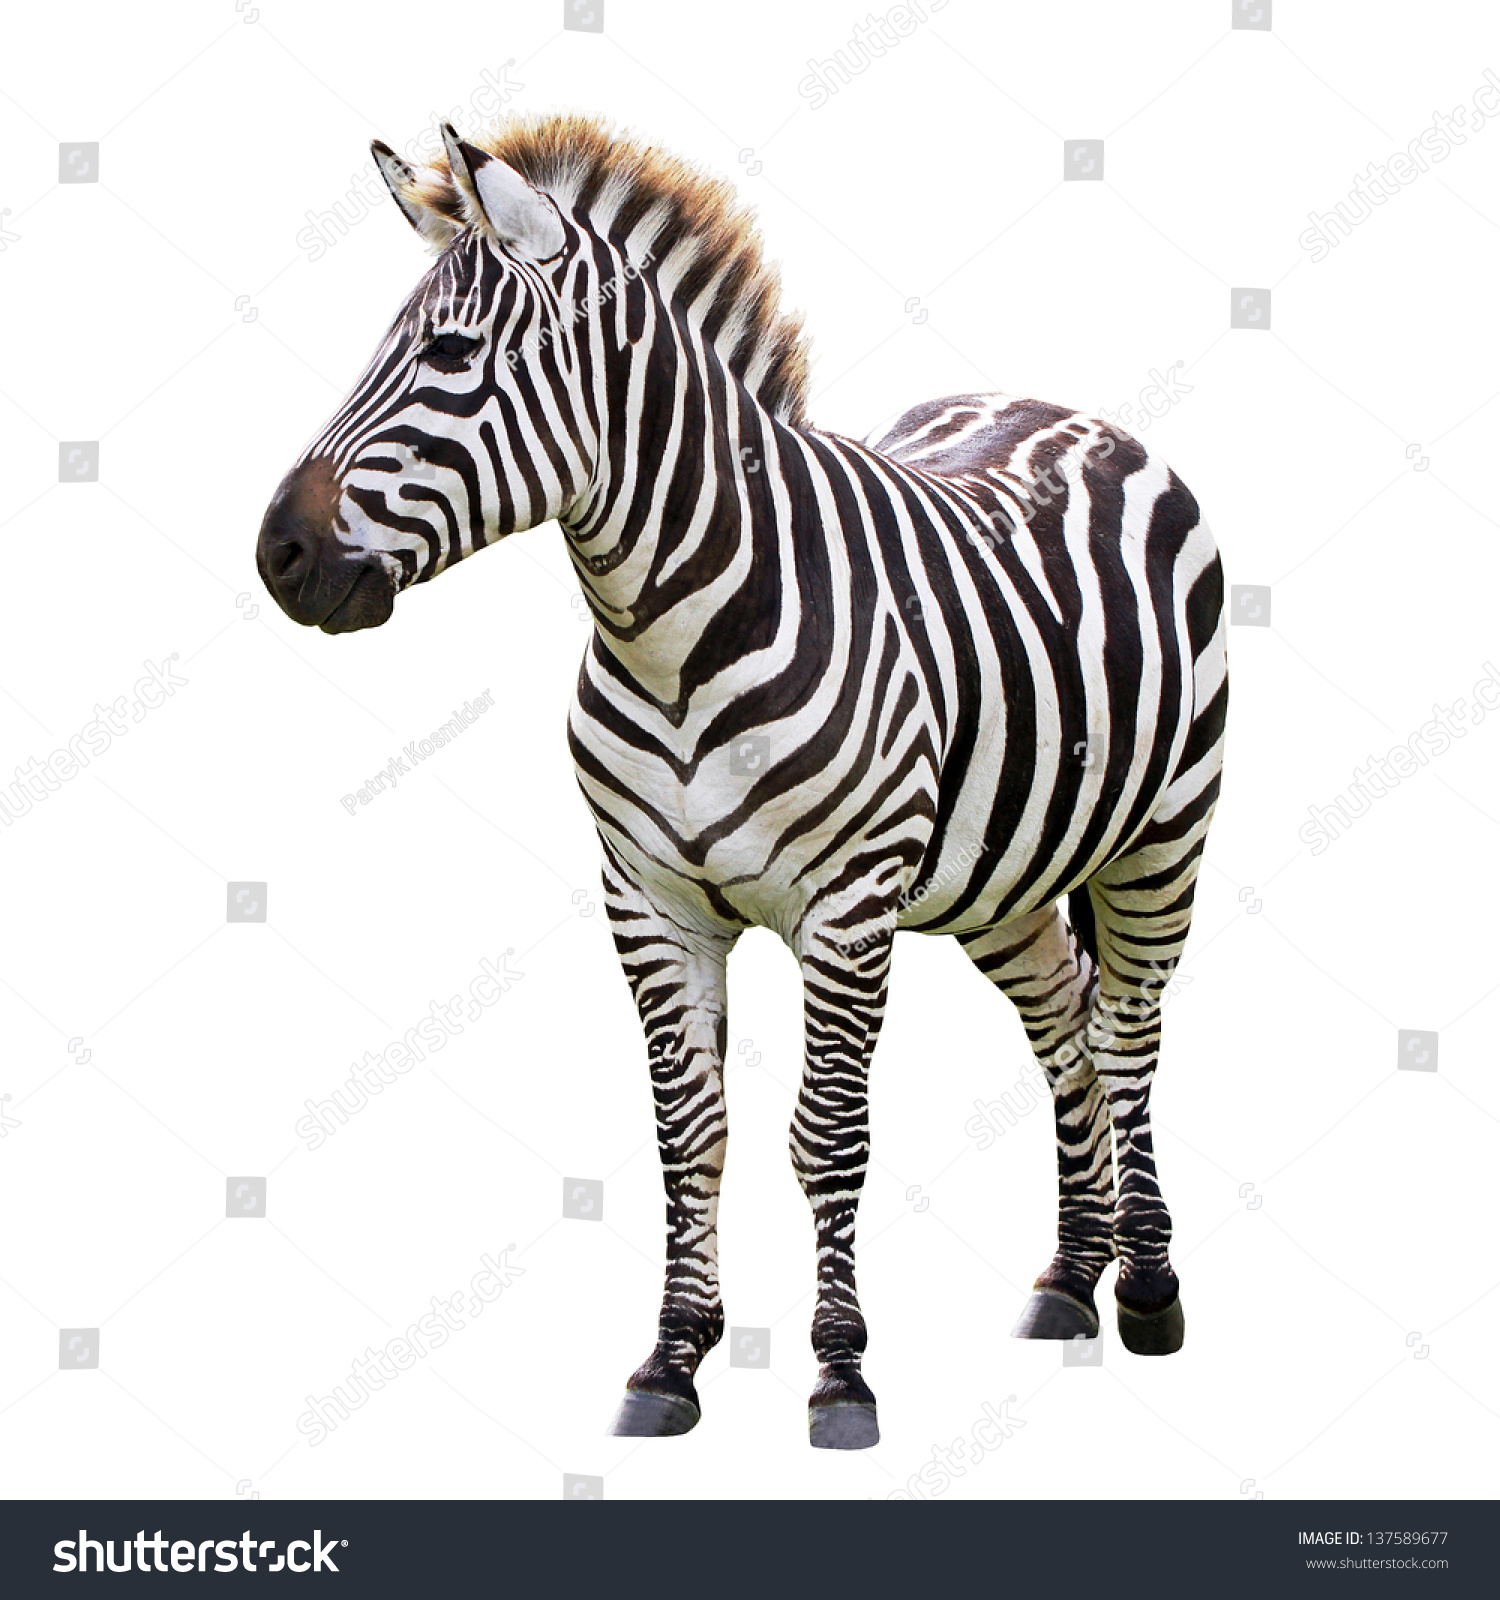 Zebra isolated on white #137589677